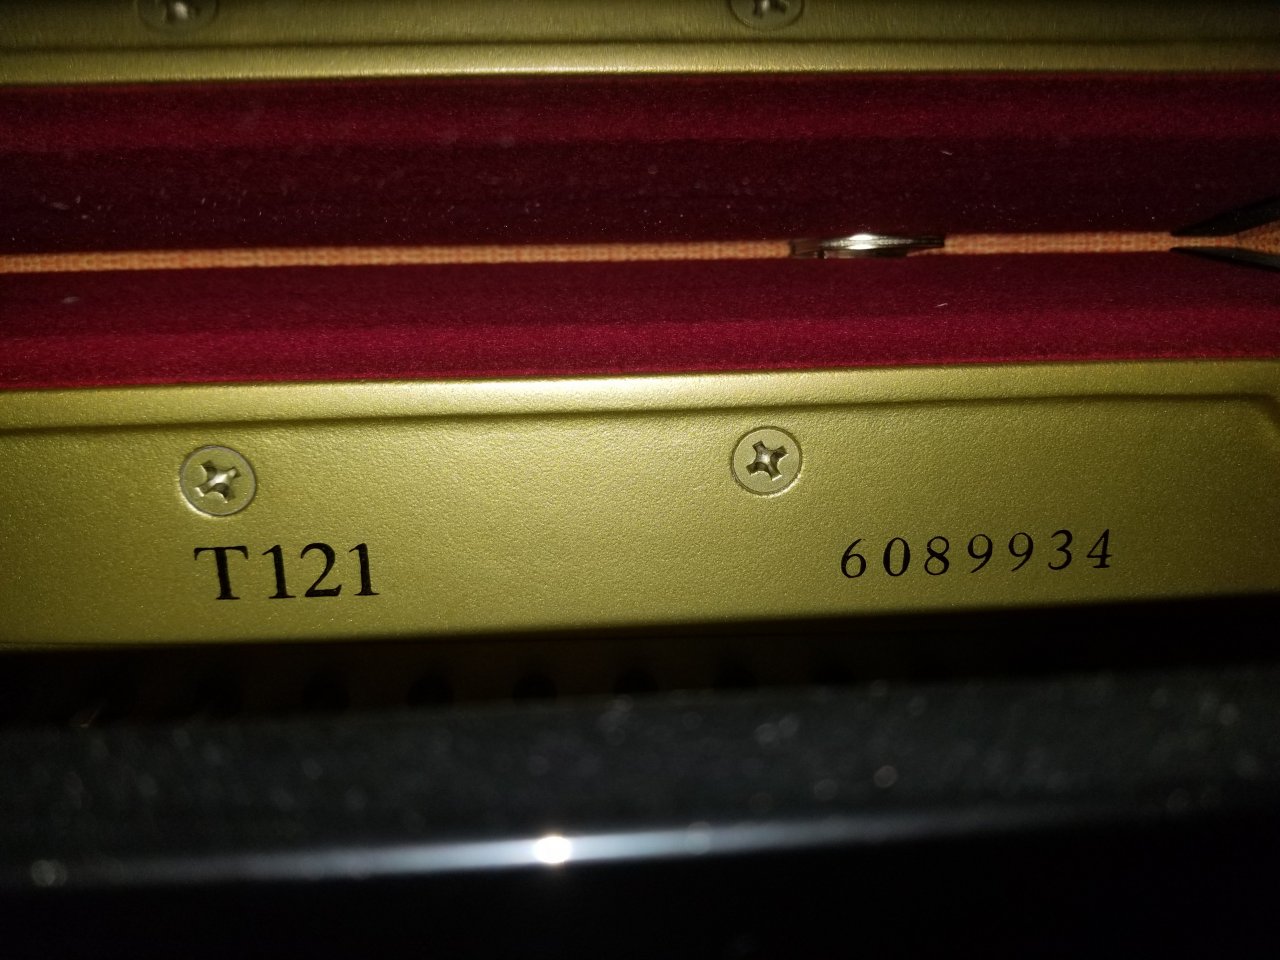 yamaha piano serial number check japan